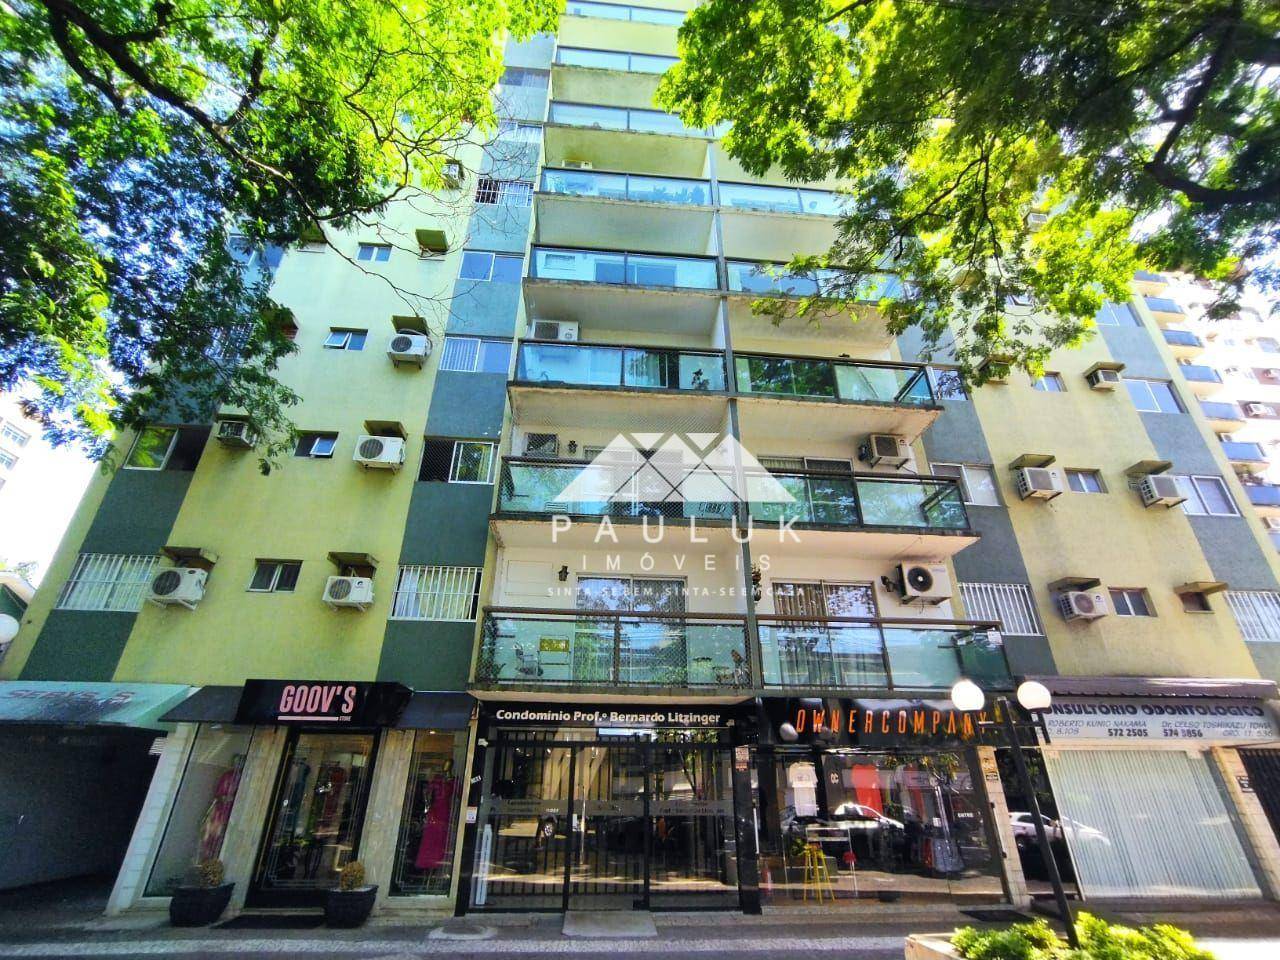 Apartamento com 3 Dormitórios Sendo 1 Suíte à venda Por R$ 490.000 - Edificio Professor Bernardo Lit | PAULUK IMÓVEIS | Portal OBusca